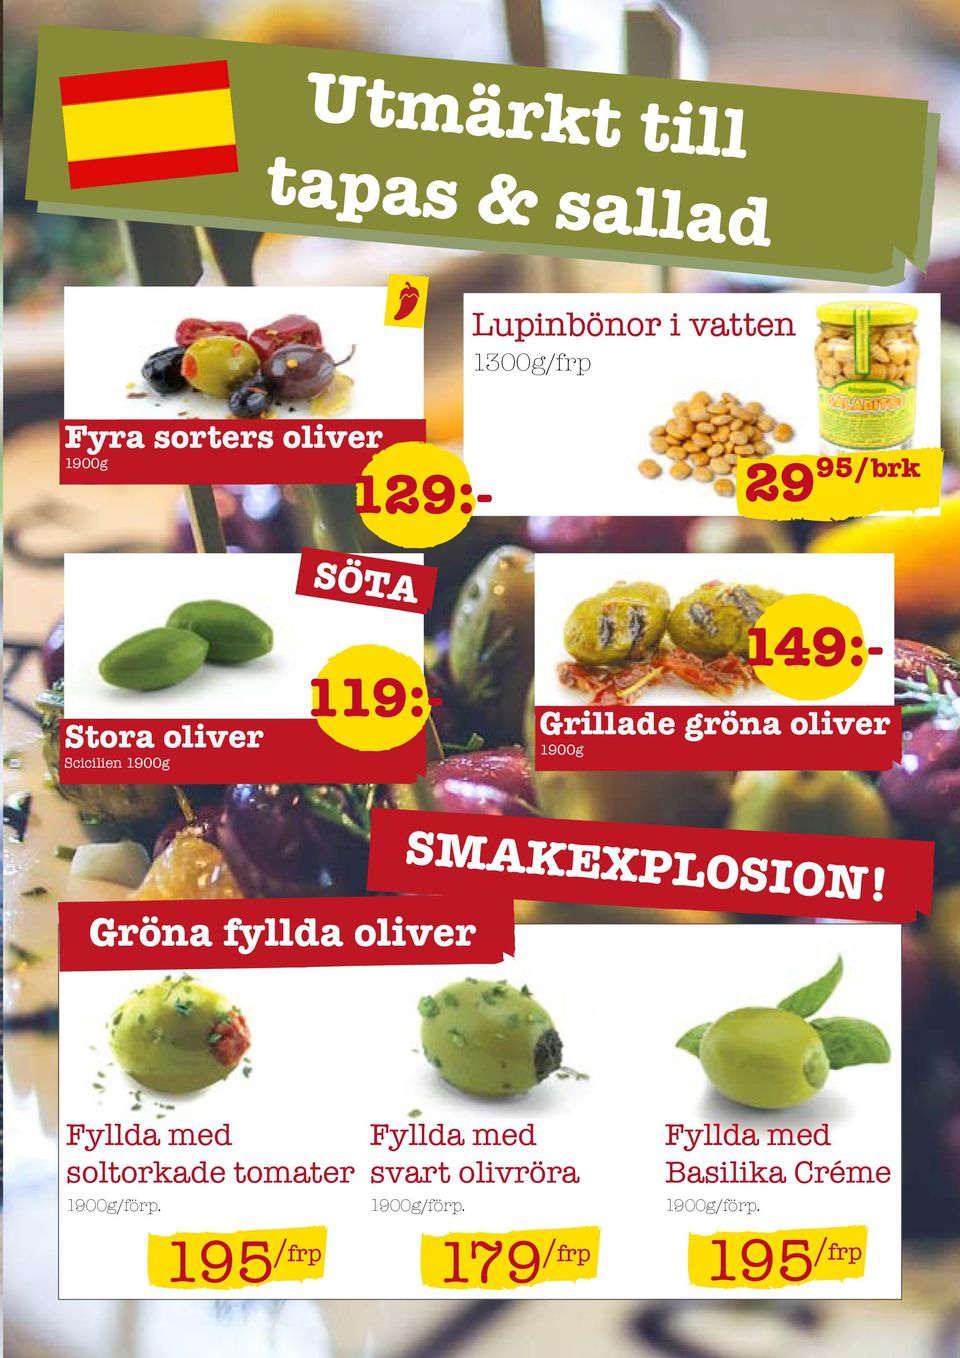 1900g SMAKEXPLOSION! Gröna fyllda oliver Fyllda med soltorkade tomater 1900g/förp.